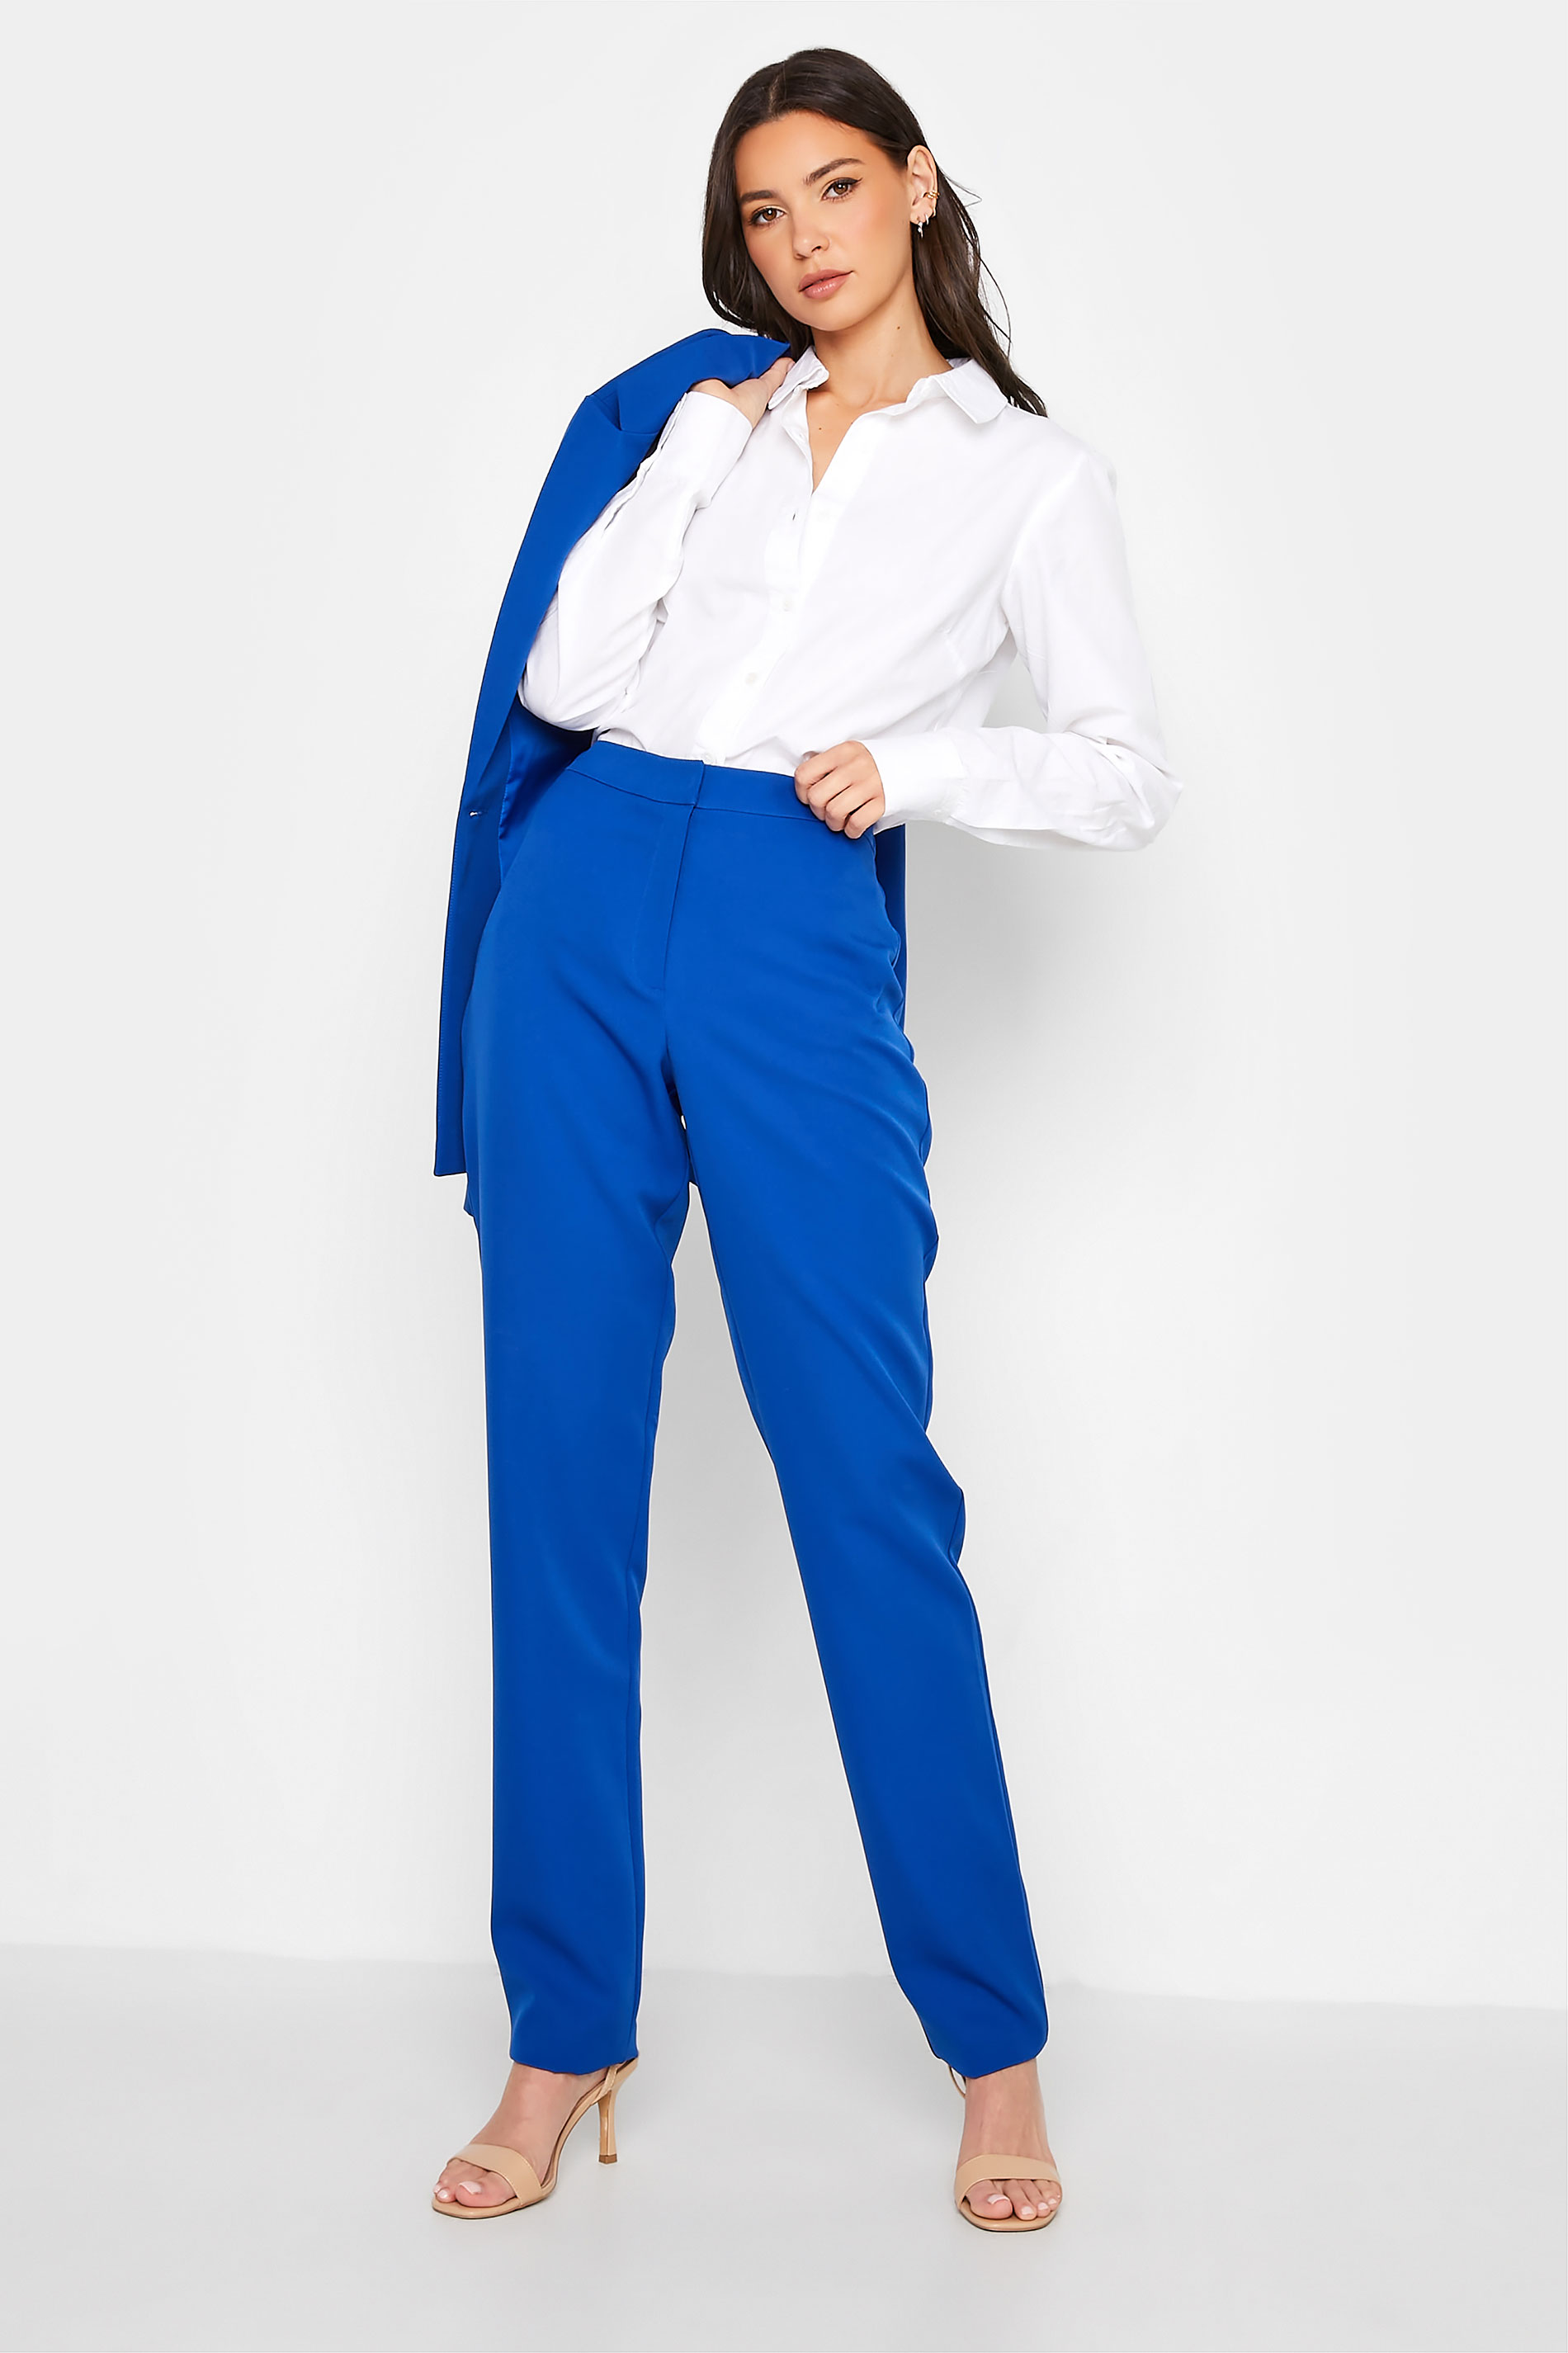 TROUSERS Dark Blue Pant Suit Trousers  Shop BRIAR PRESTIDGE Suits